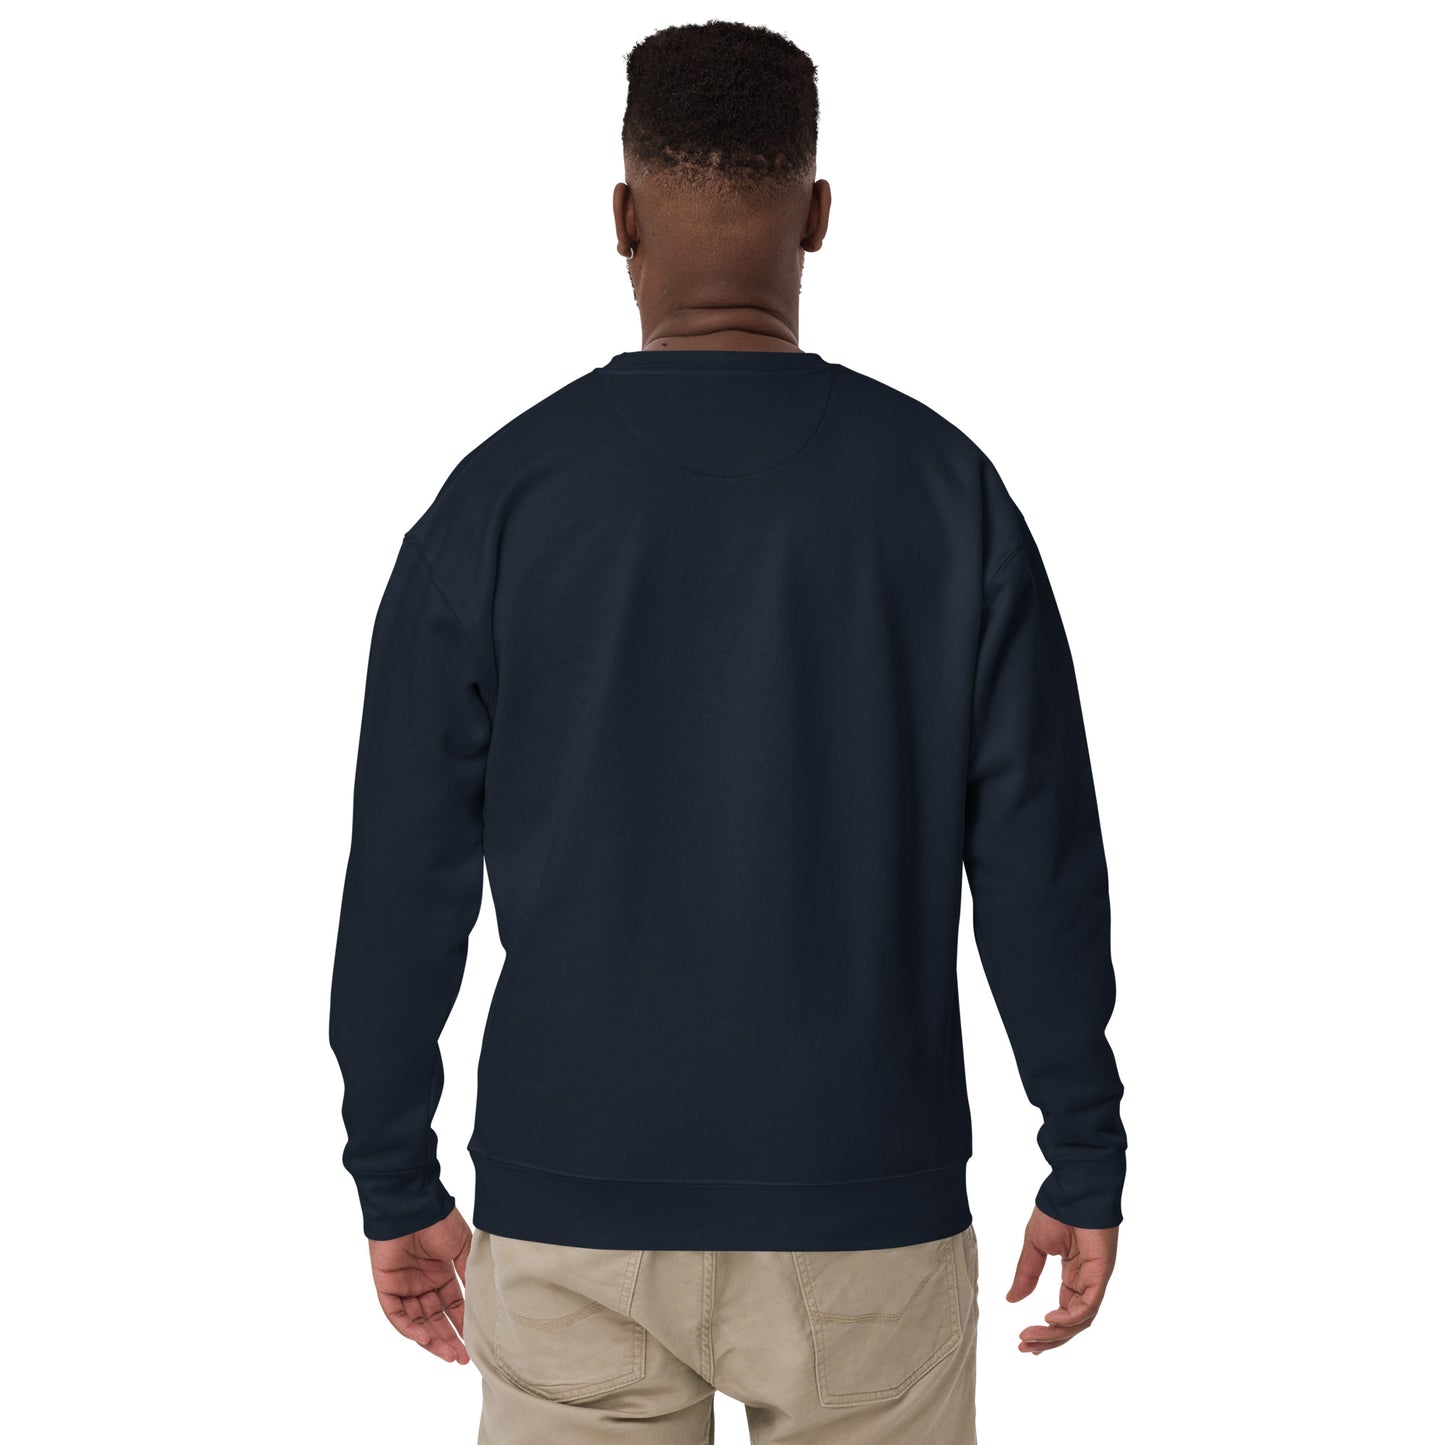 COSMIC Sweatshirt